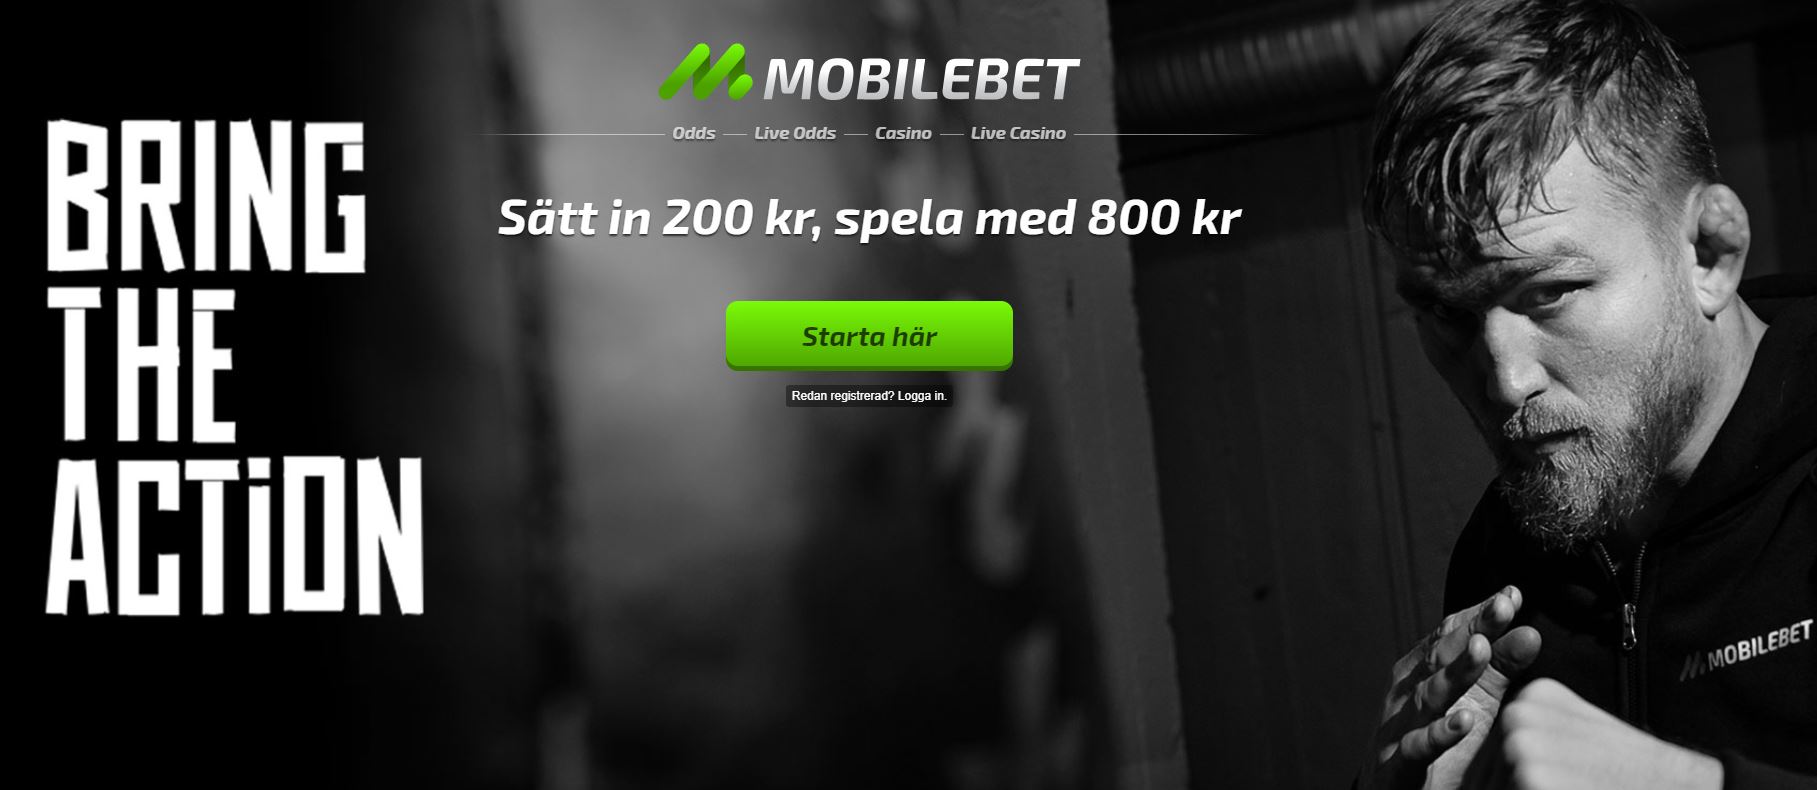 mobilebet_sweden